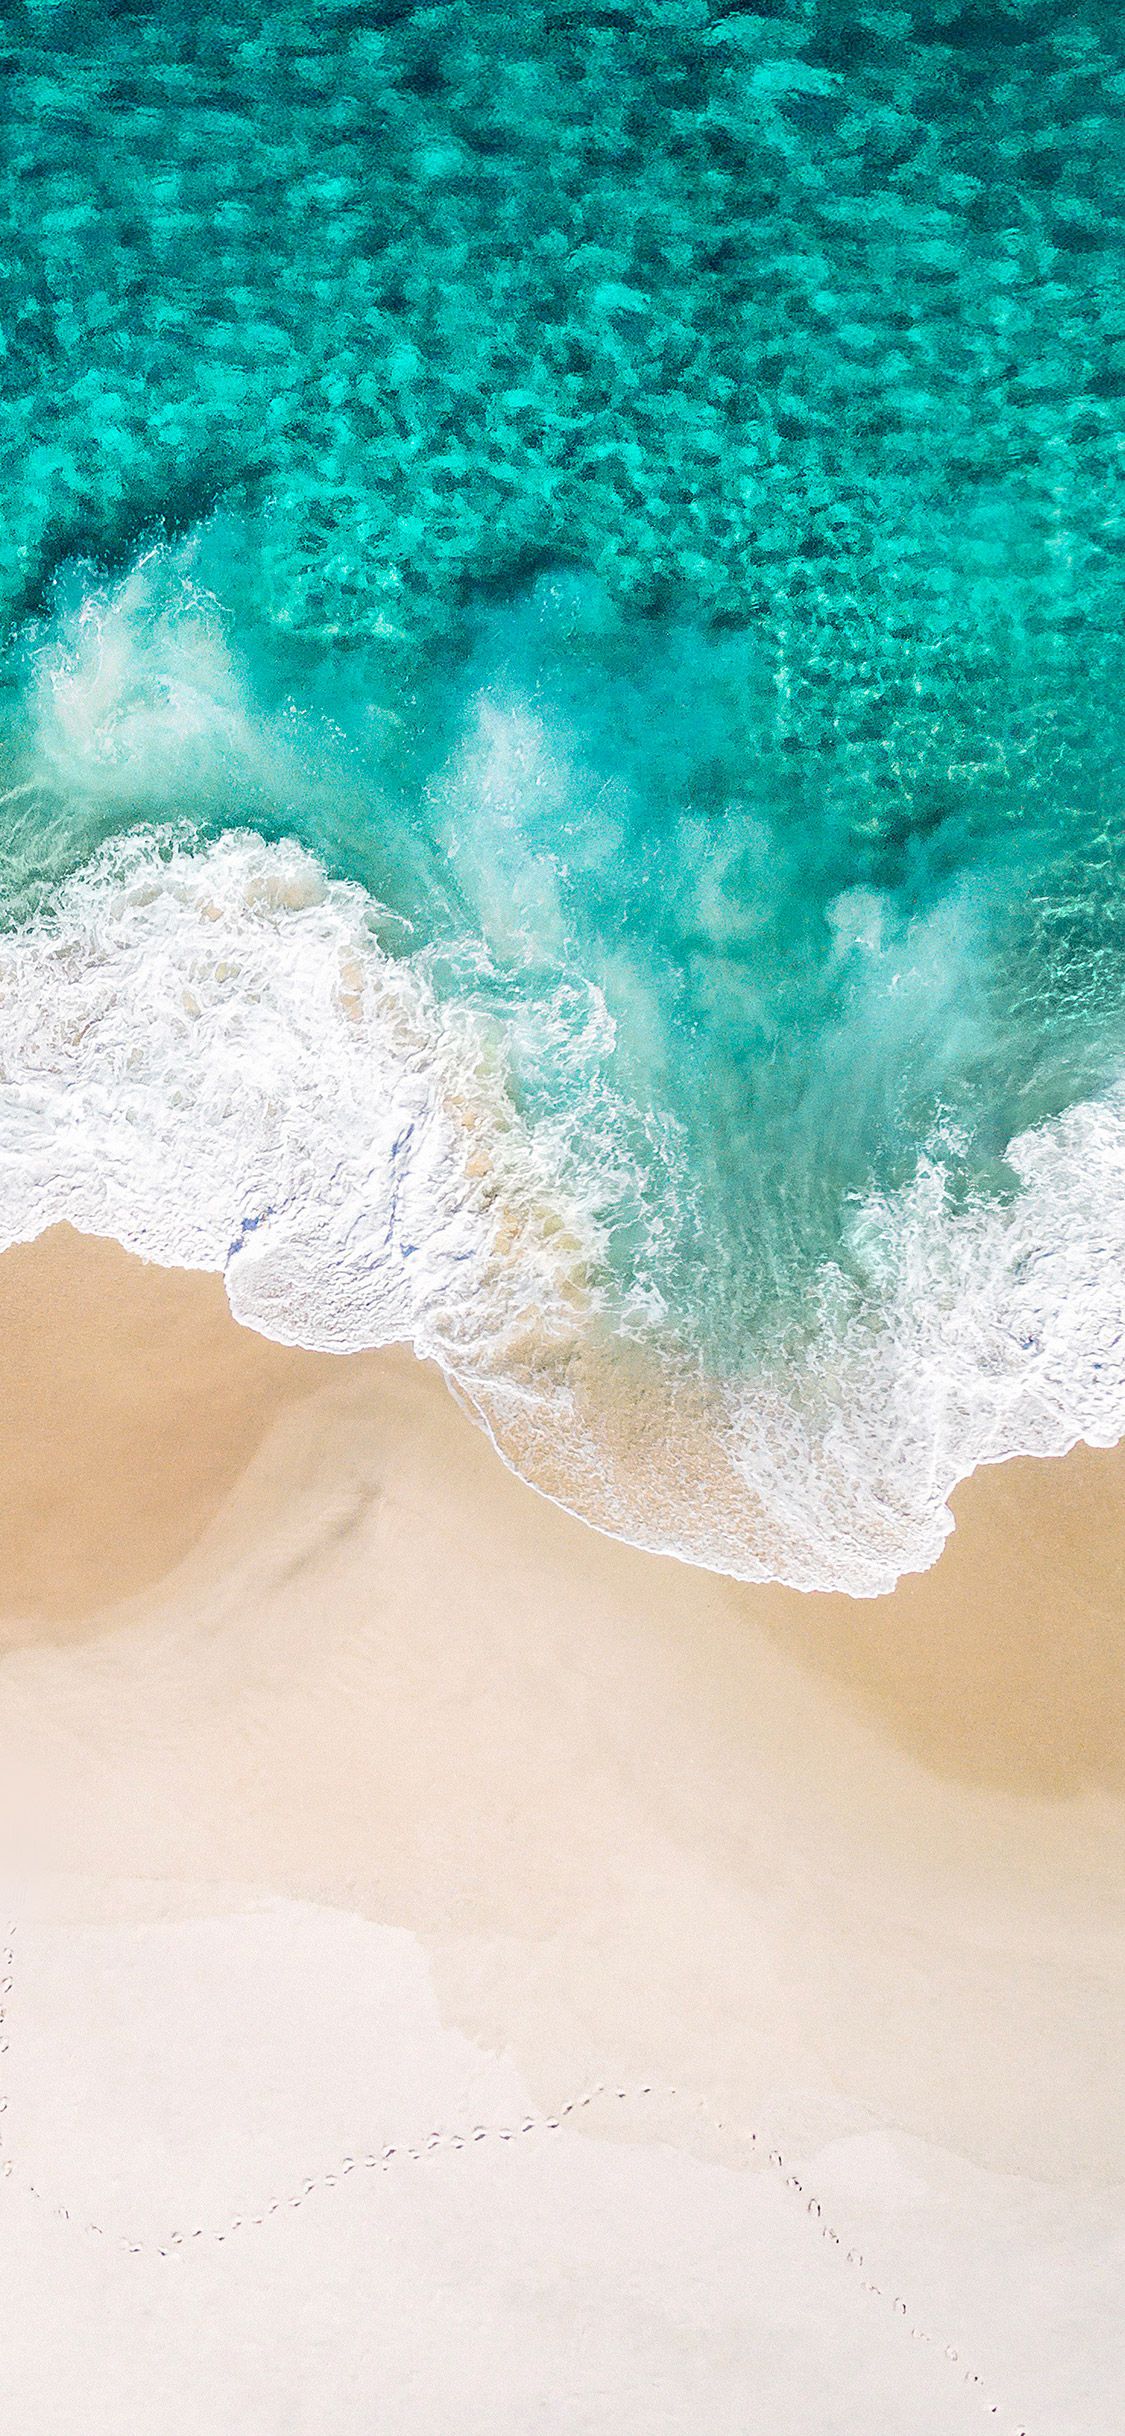 Hình nền sóng biển xanh đẹp: Ngắm những đợt sóng xanh vỗ bờ sẽ đem lại cho bạn một cảm giác thư thái và yên bình. Hãy xem hình nền sóng biển xanh đẹp trên điện thoại của bạn để thăng hoa trí tưởng tượng và giữ kết nối với thiên nhiên mỗi khi bạn nhìn thấy điện thoại của mình.